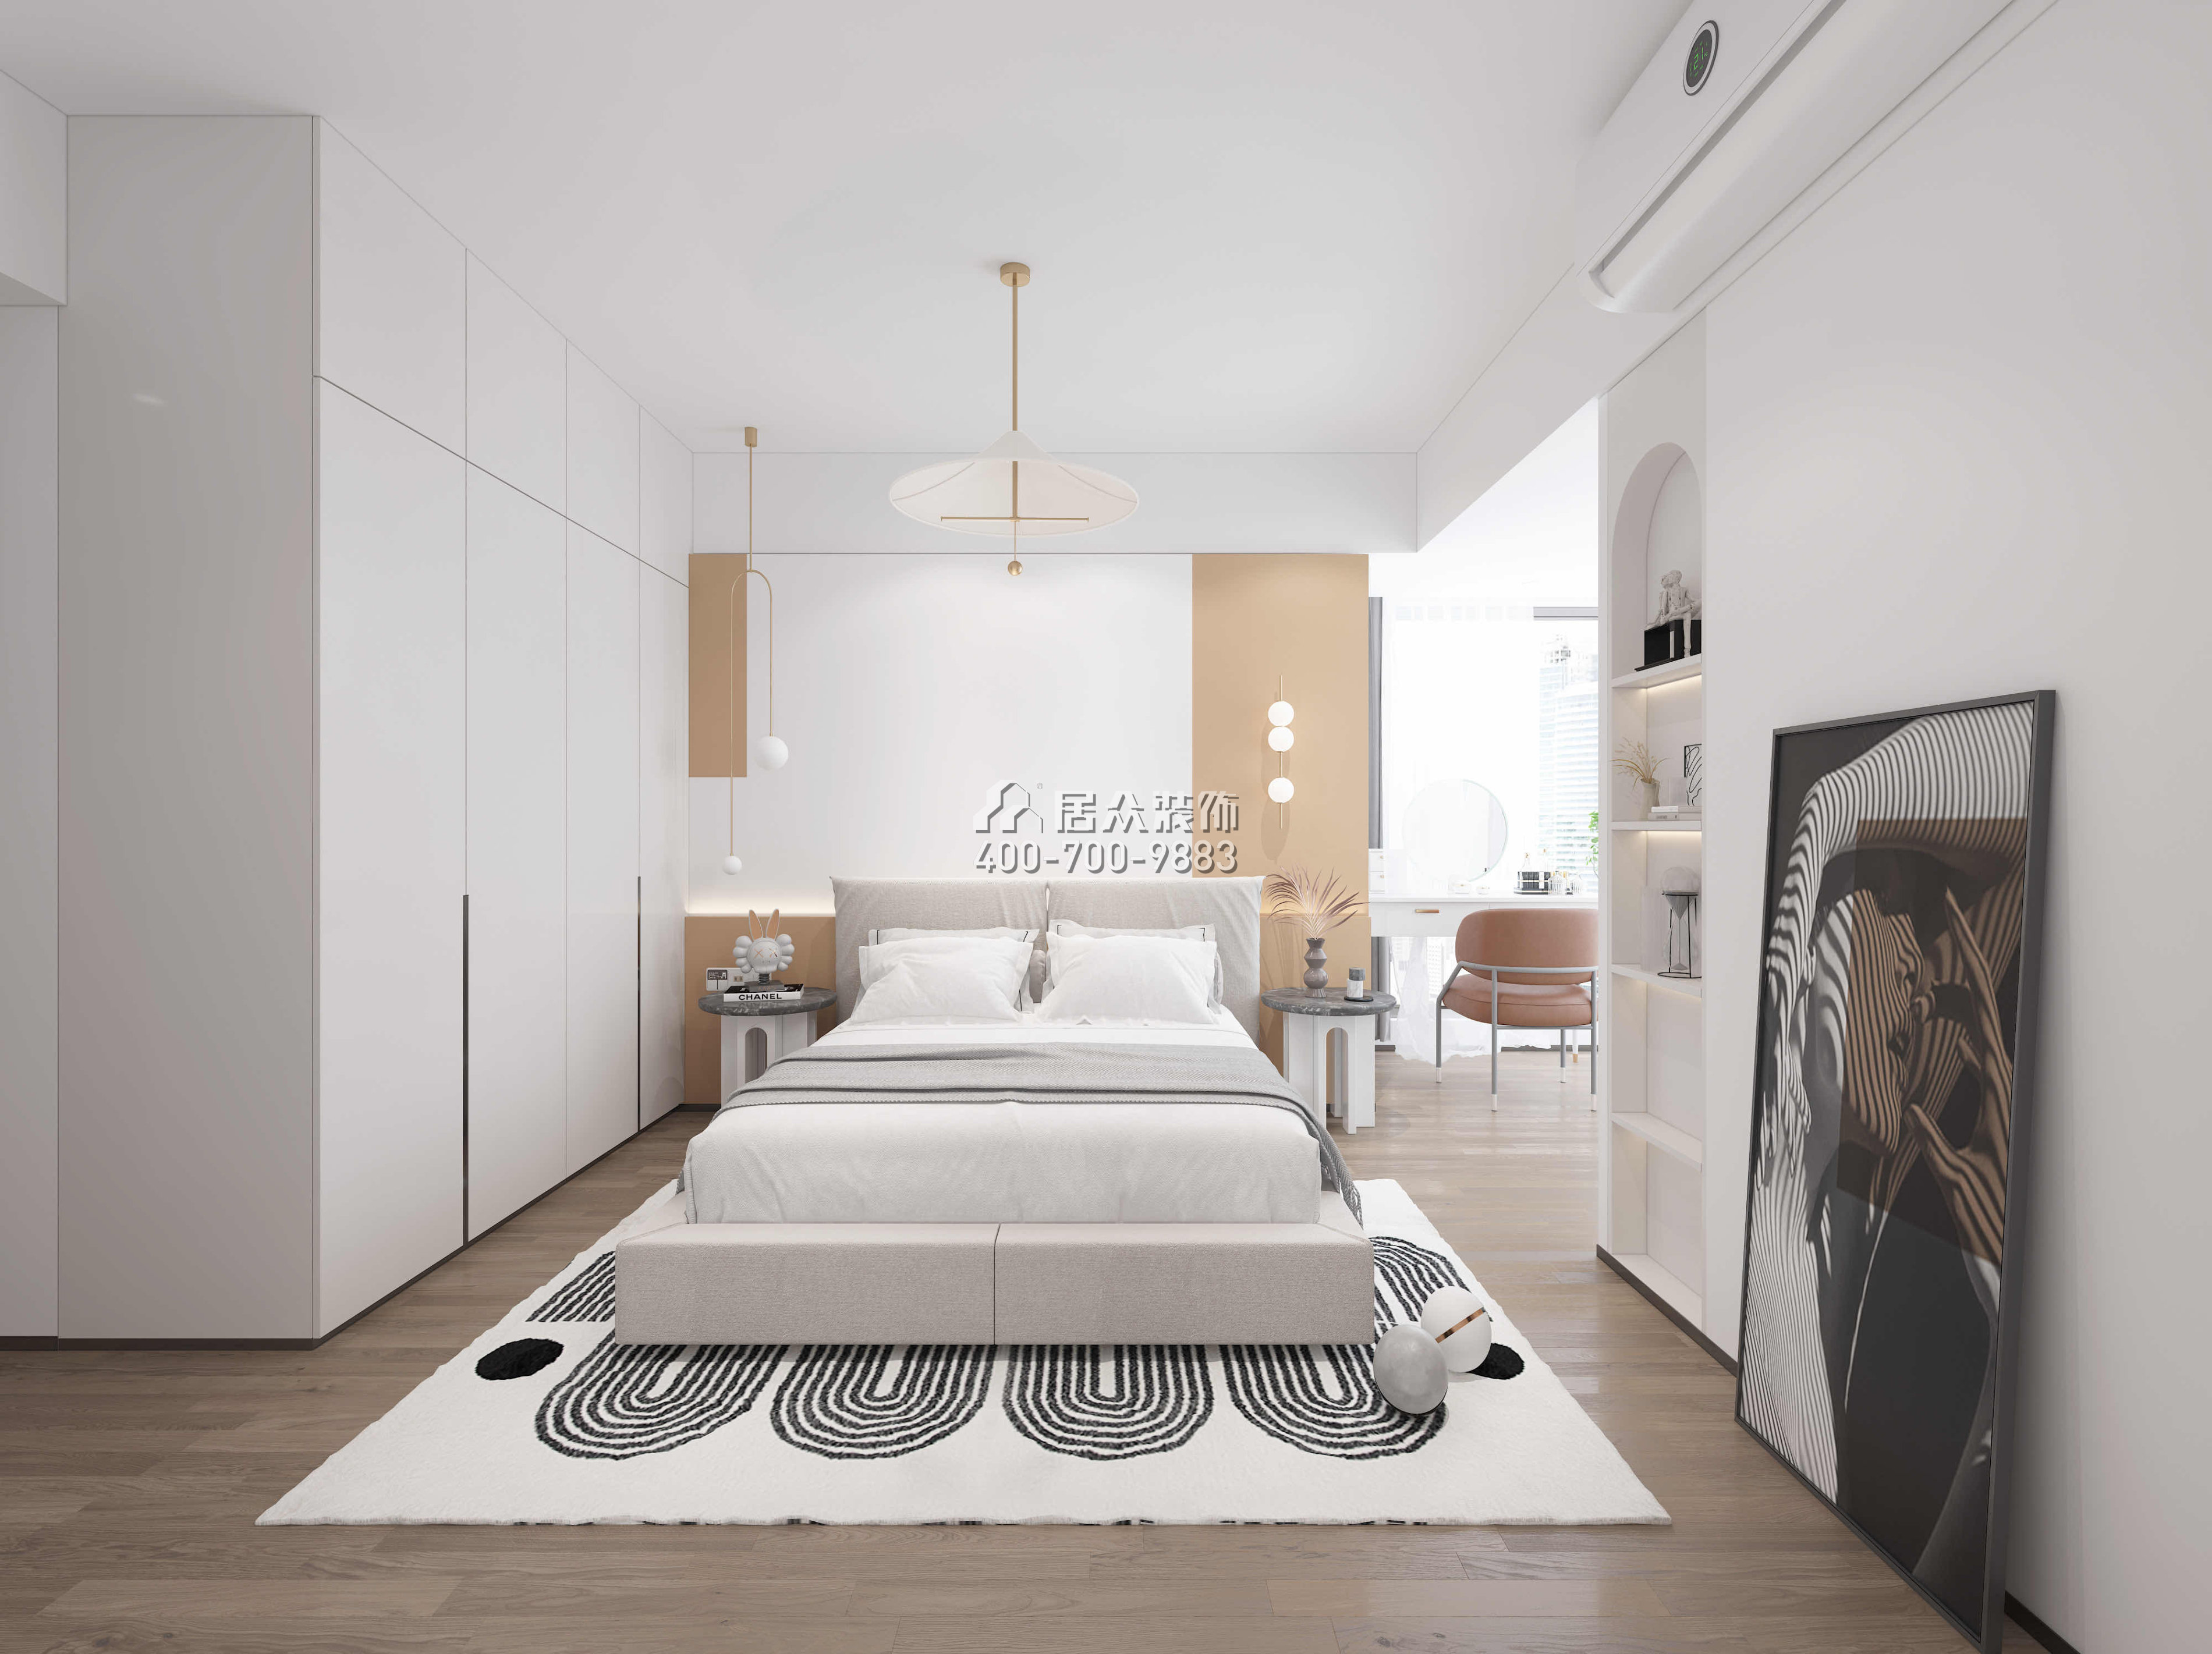 阳光玫瑰园110平方米北欧风格平层户型卧室装修效果图